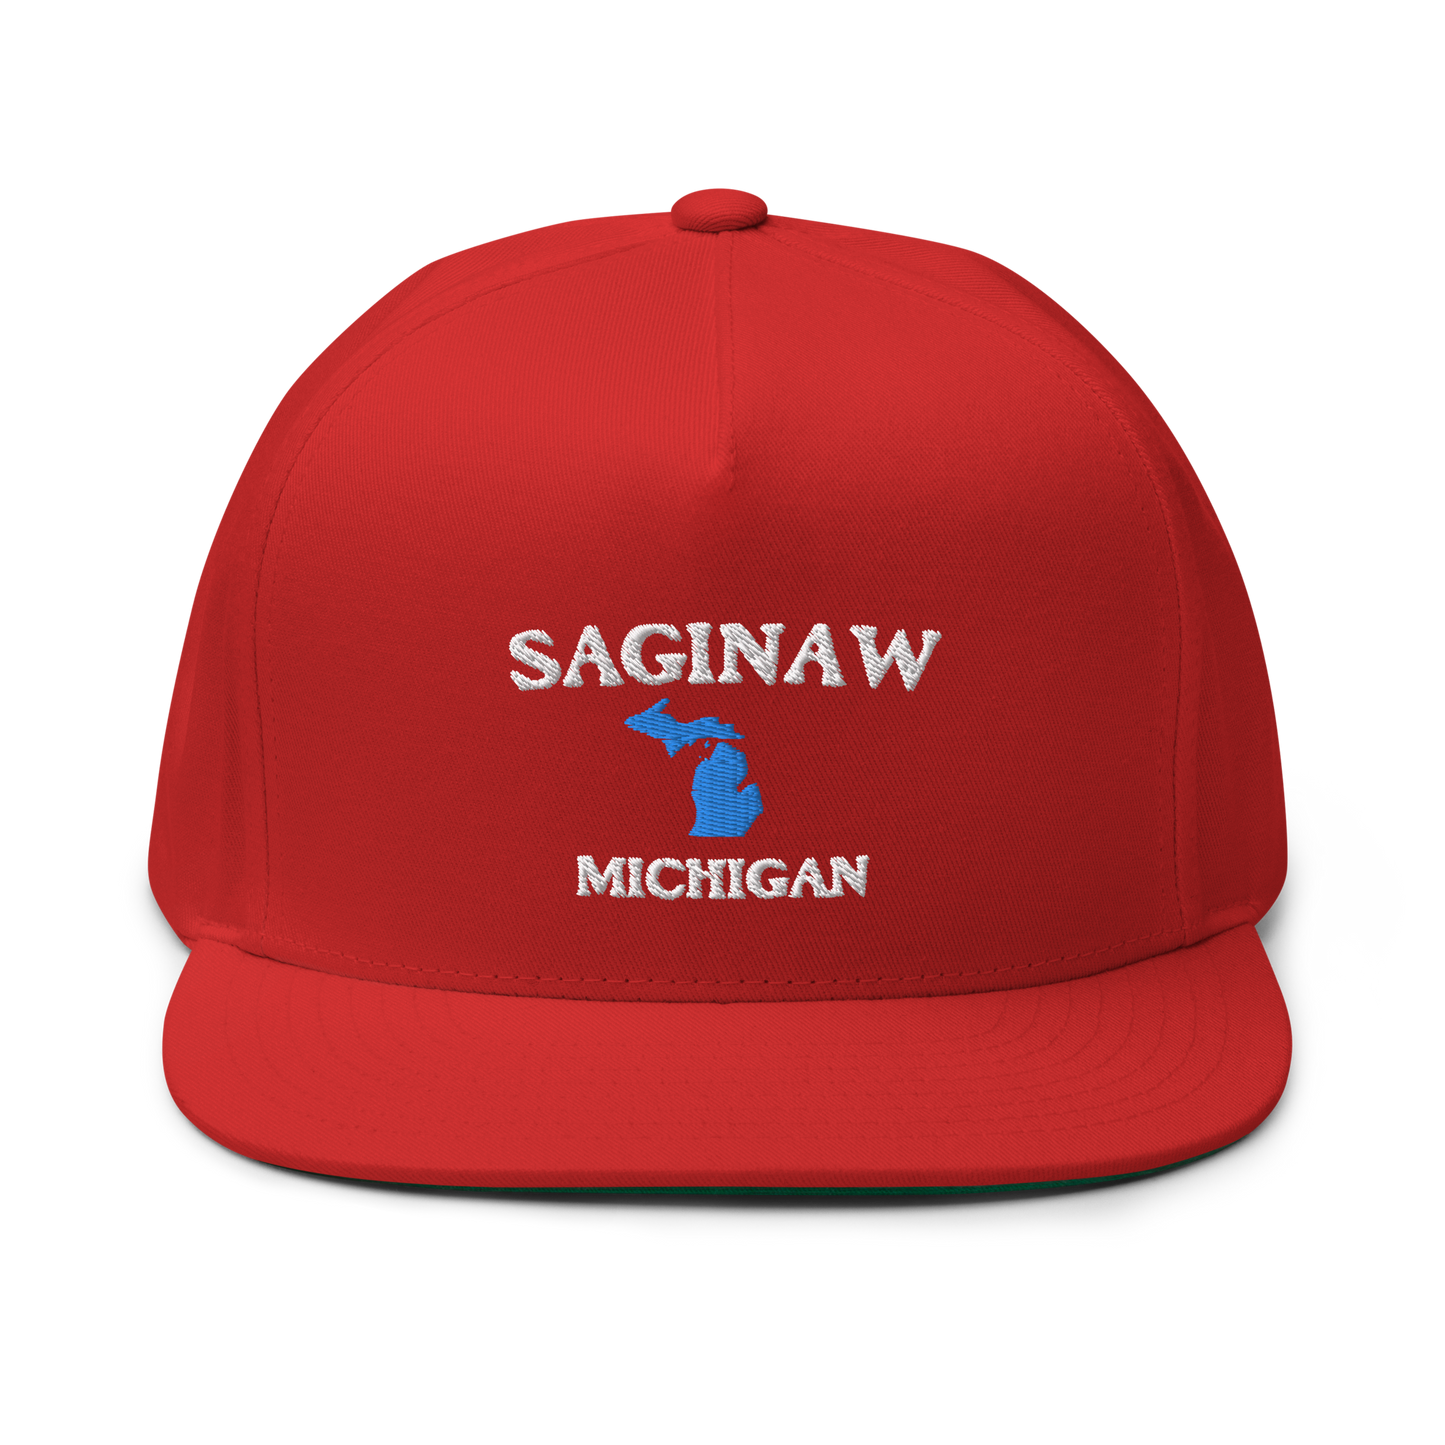 'Saginaw Michigan' Flat Bill Snapback (w/ Michigan Outline)